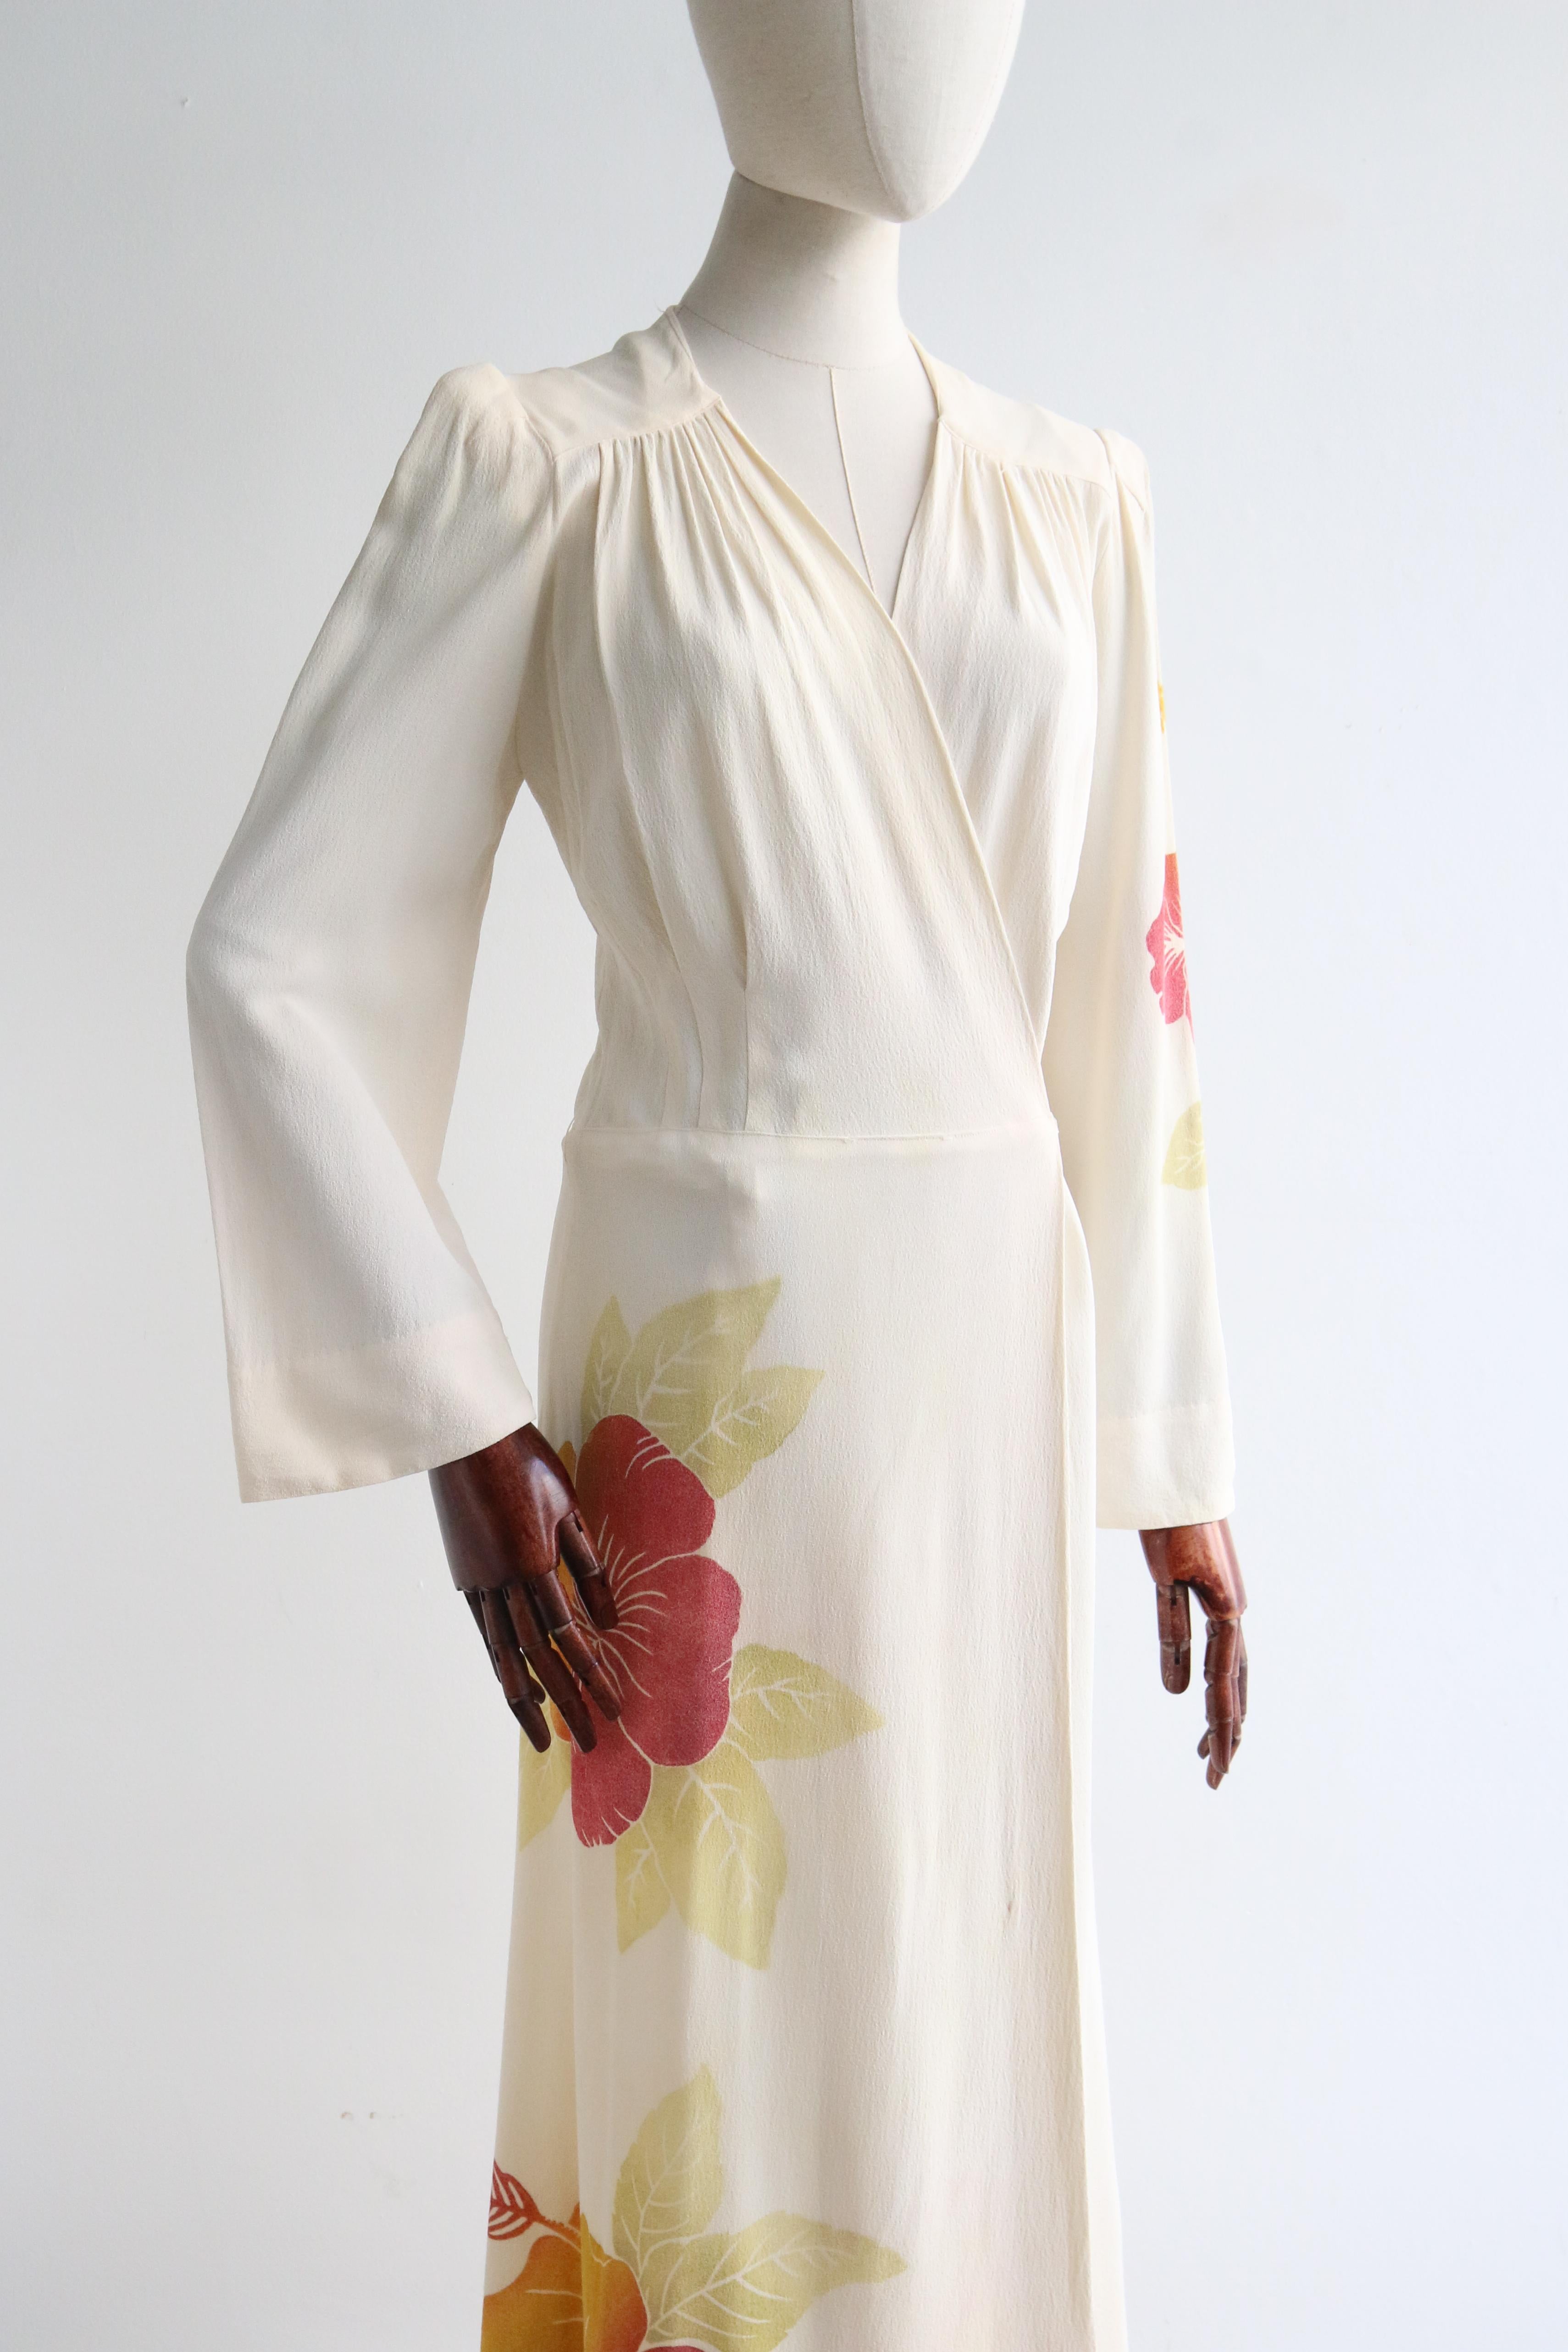 Women's or Men's Vintage 1940's Crepe Silk Hibiscus Dress UK 10 US 6